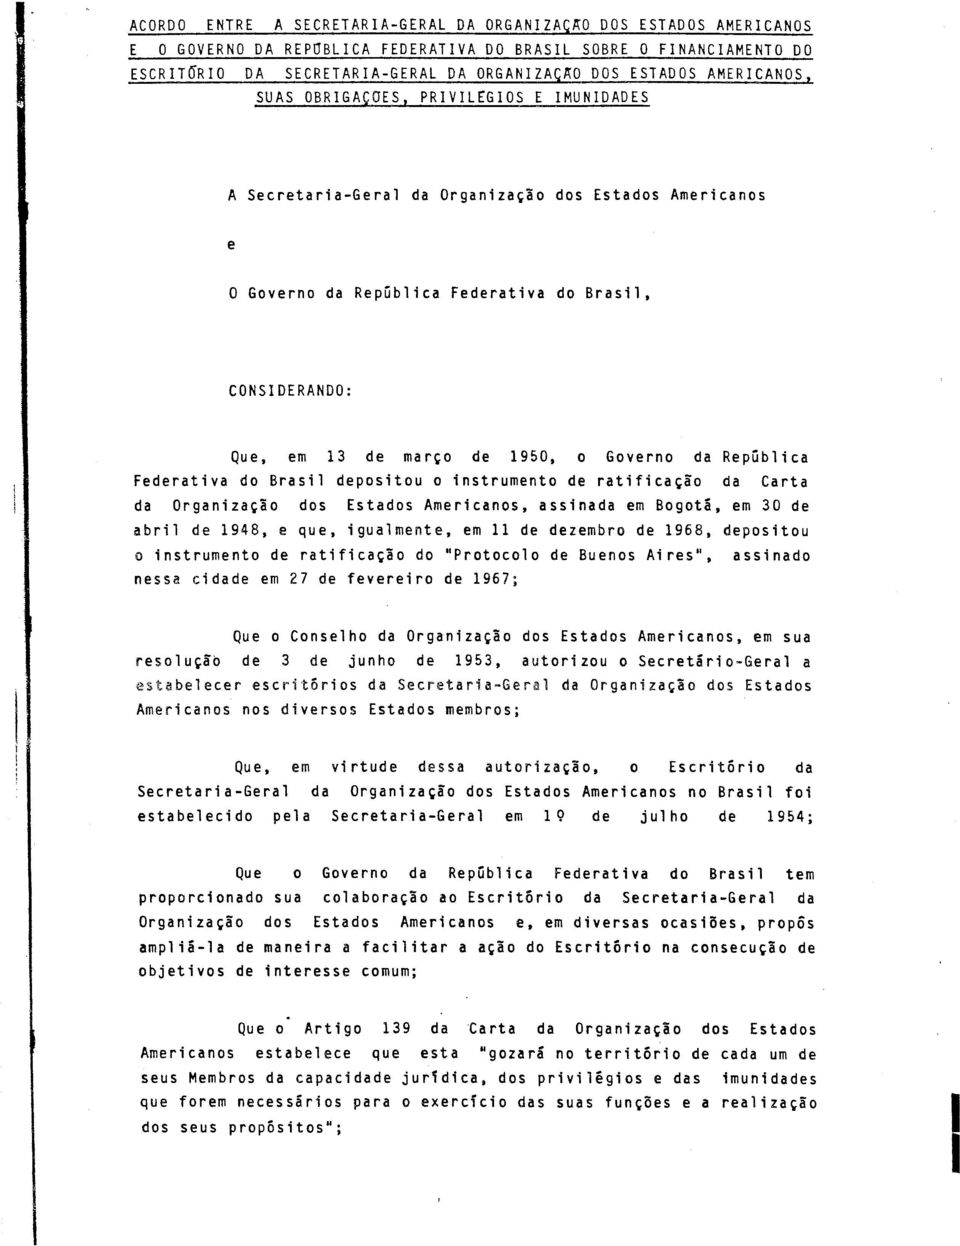 1950, o Governo da República Federativa do Brasil depositou o instrumento de ratificação da Carta da Organização dos Estados Americanos, assinada em Bogotá, em 30 de abril de 1948, e que, igualmente,